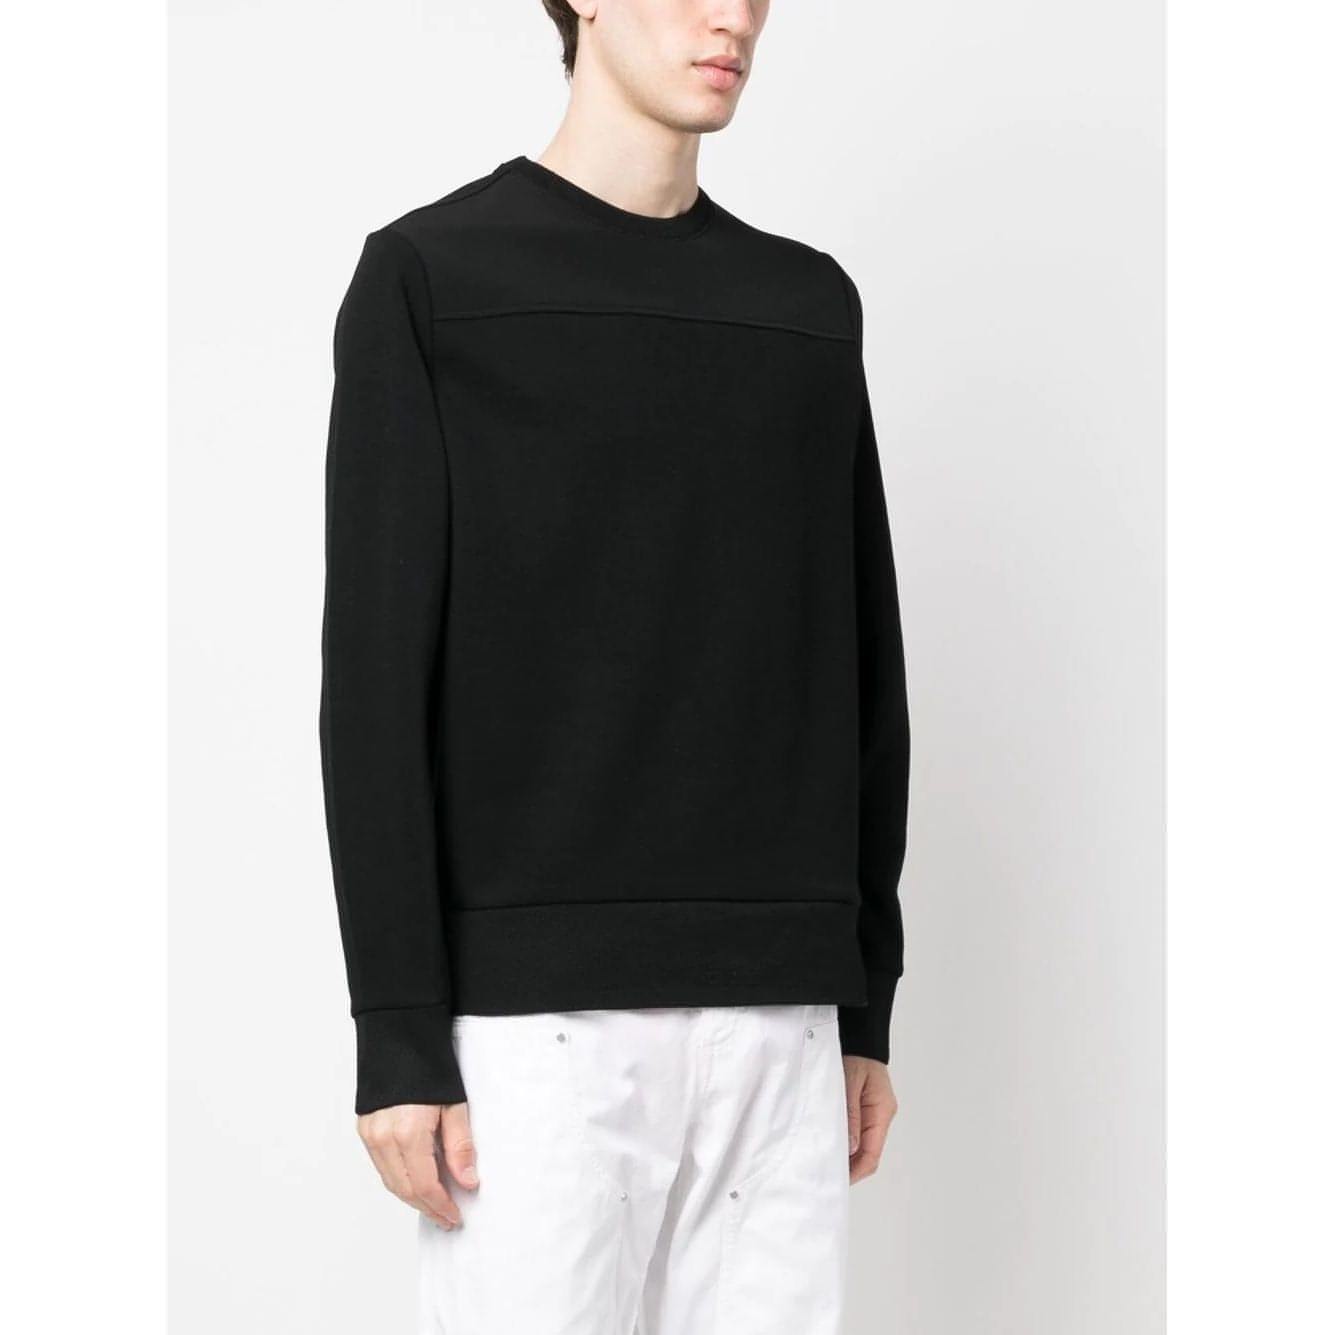 MICHAEL KORS vyriškas juodas megztinis Long sleeve crew sweater